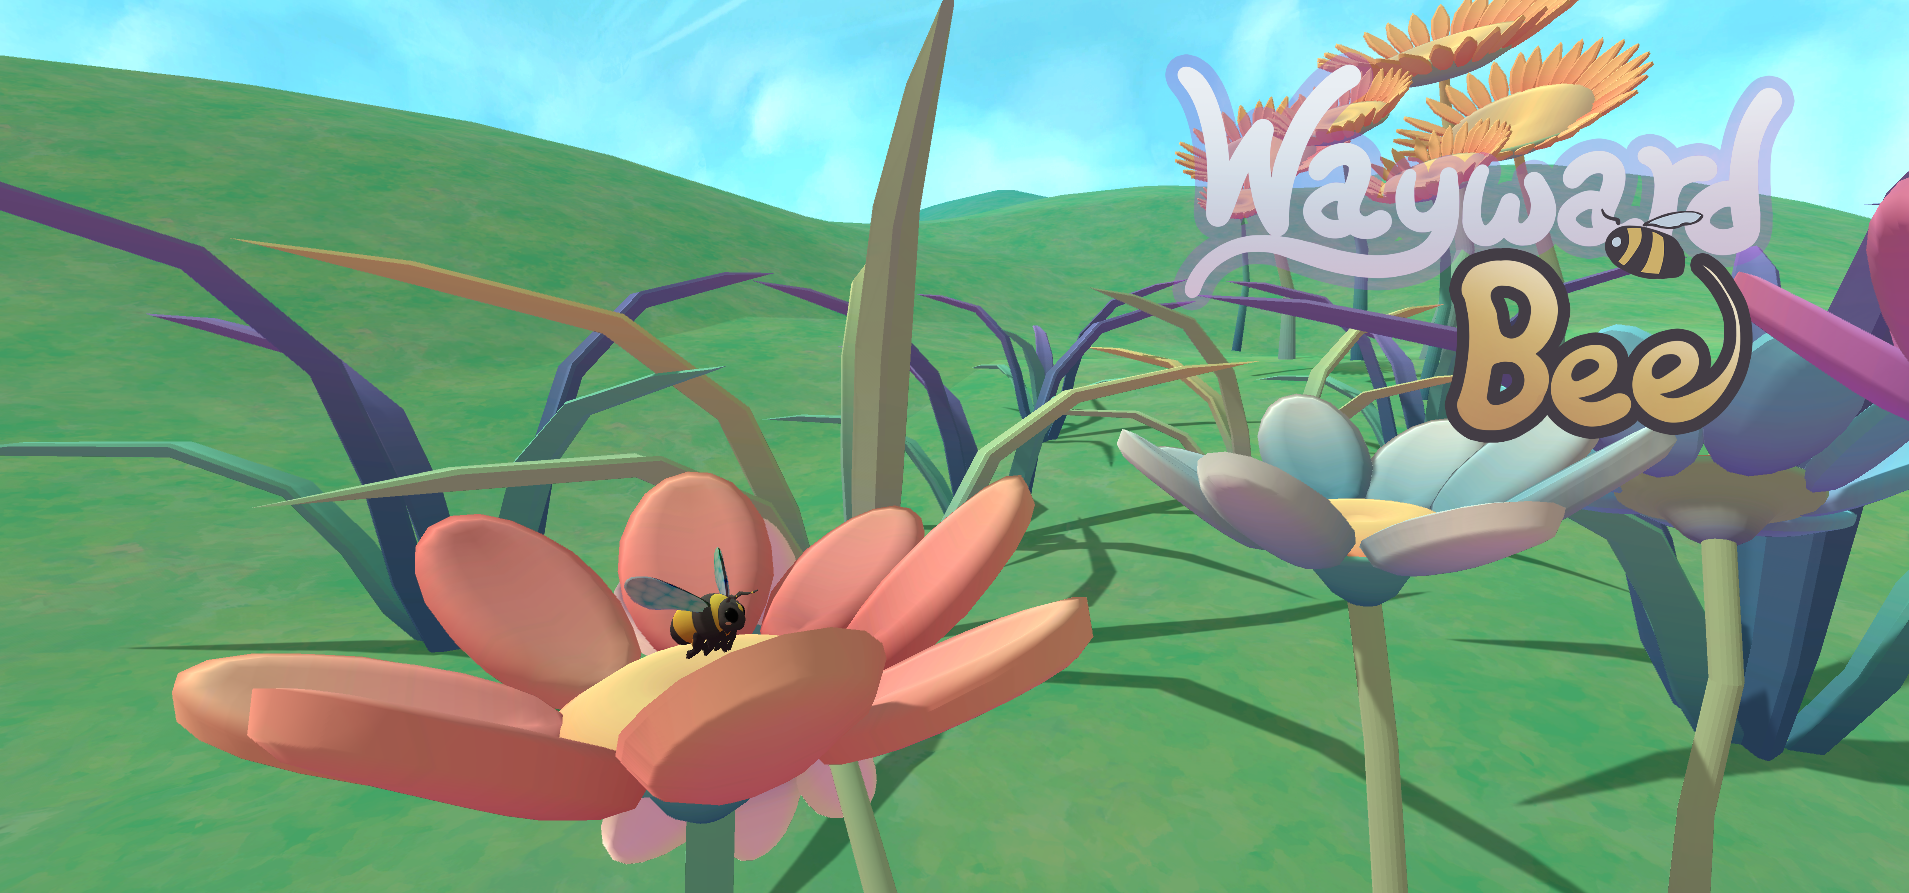 Wayward Bee